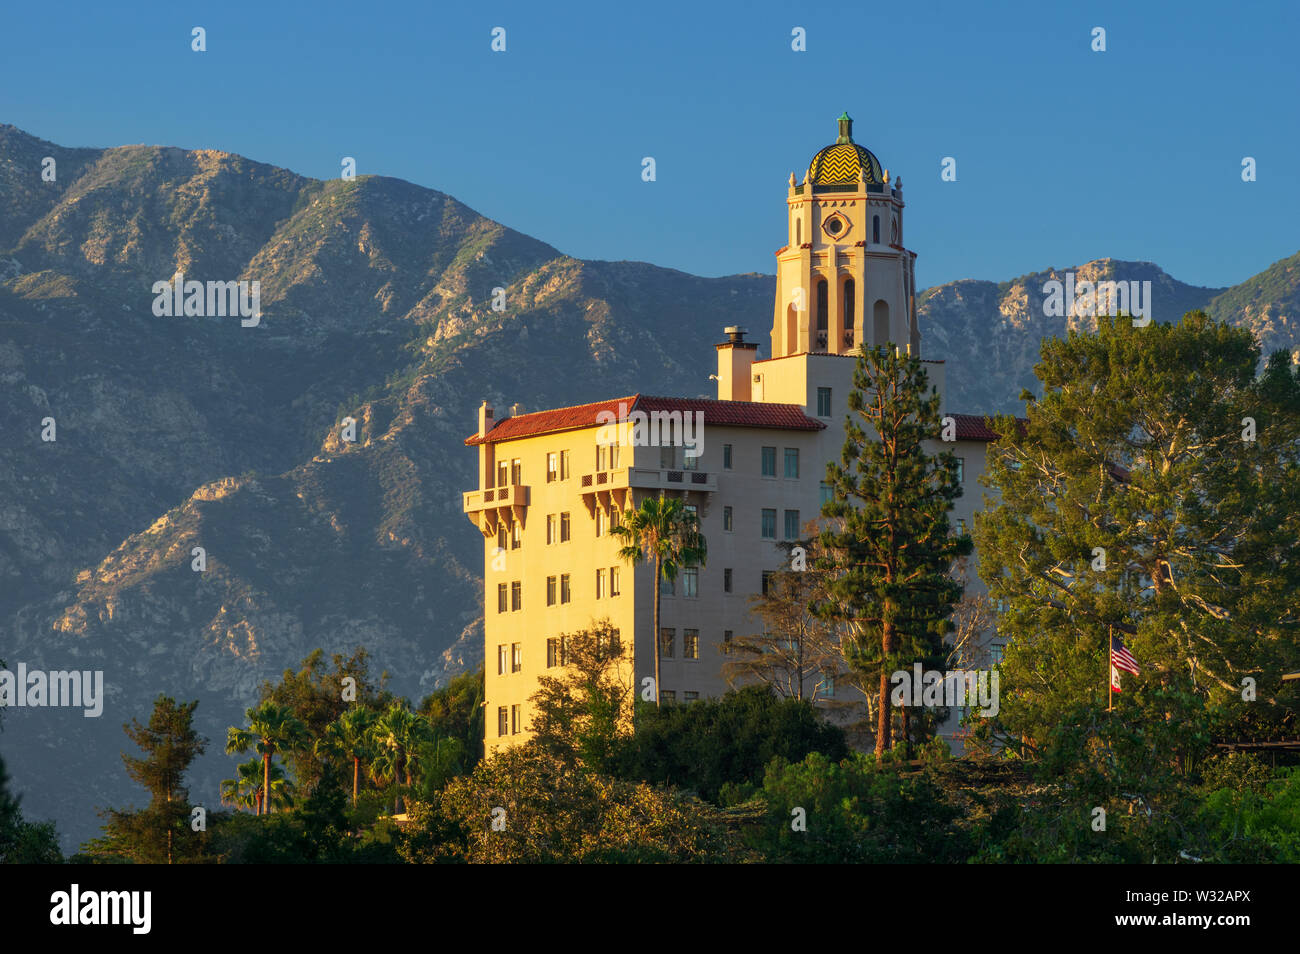 Bild, das nördlich vom Richard H. Chambers Courthouse in Pasadena, Kalifornien, zeigt die San Gabriel Mountains im Hintergrund. Stockfoto